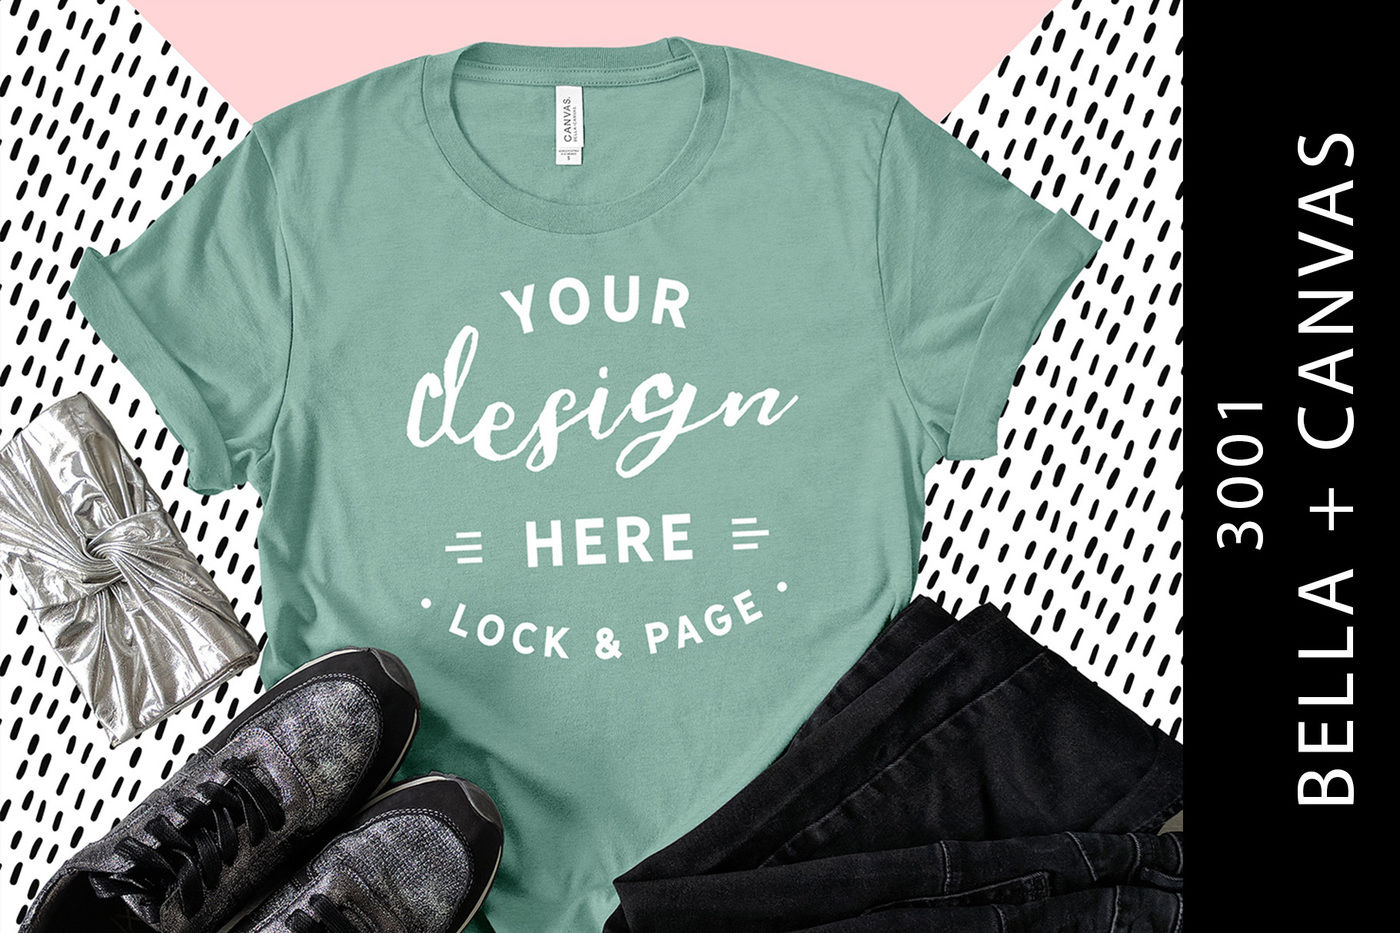 Download Formal Shirt Mockup Psd Free - Free Mockups | PSD Template | Design Assets